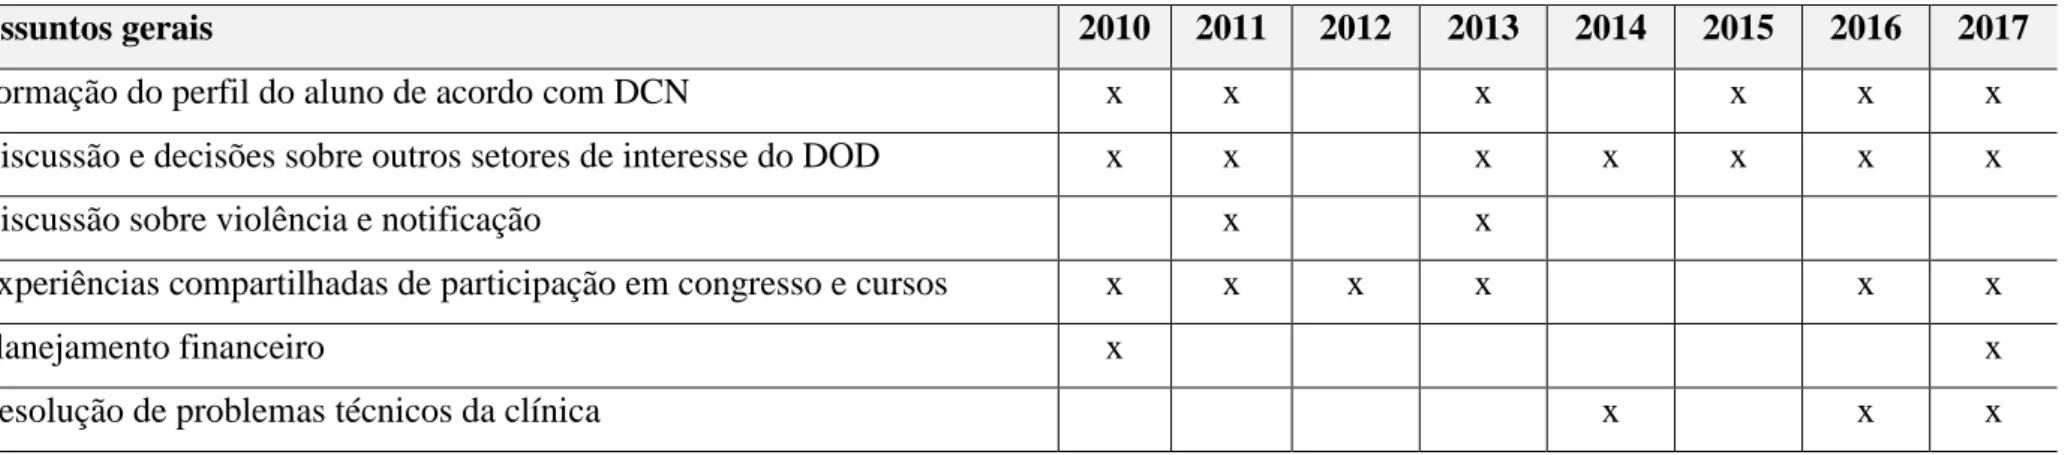 Tabela 4 - Resultado da análise dos dados sobre a temática “assuntos gerais”, com seus respectivos assuntos nos anos de 2010 a 2017